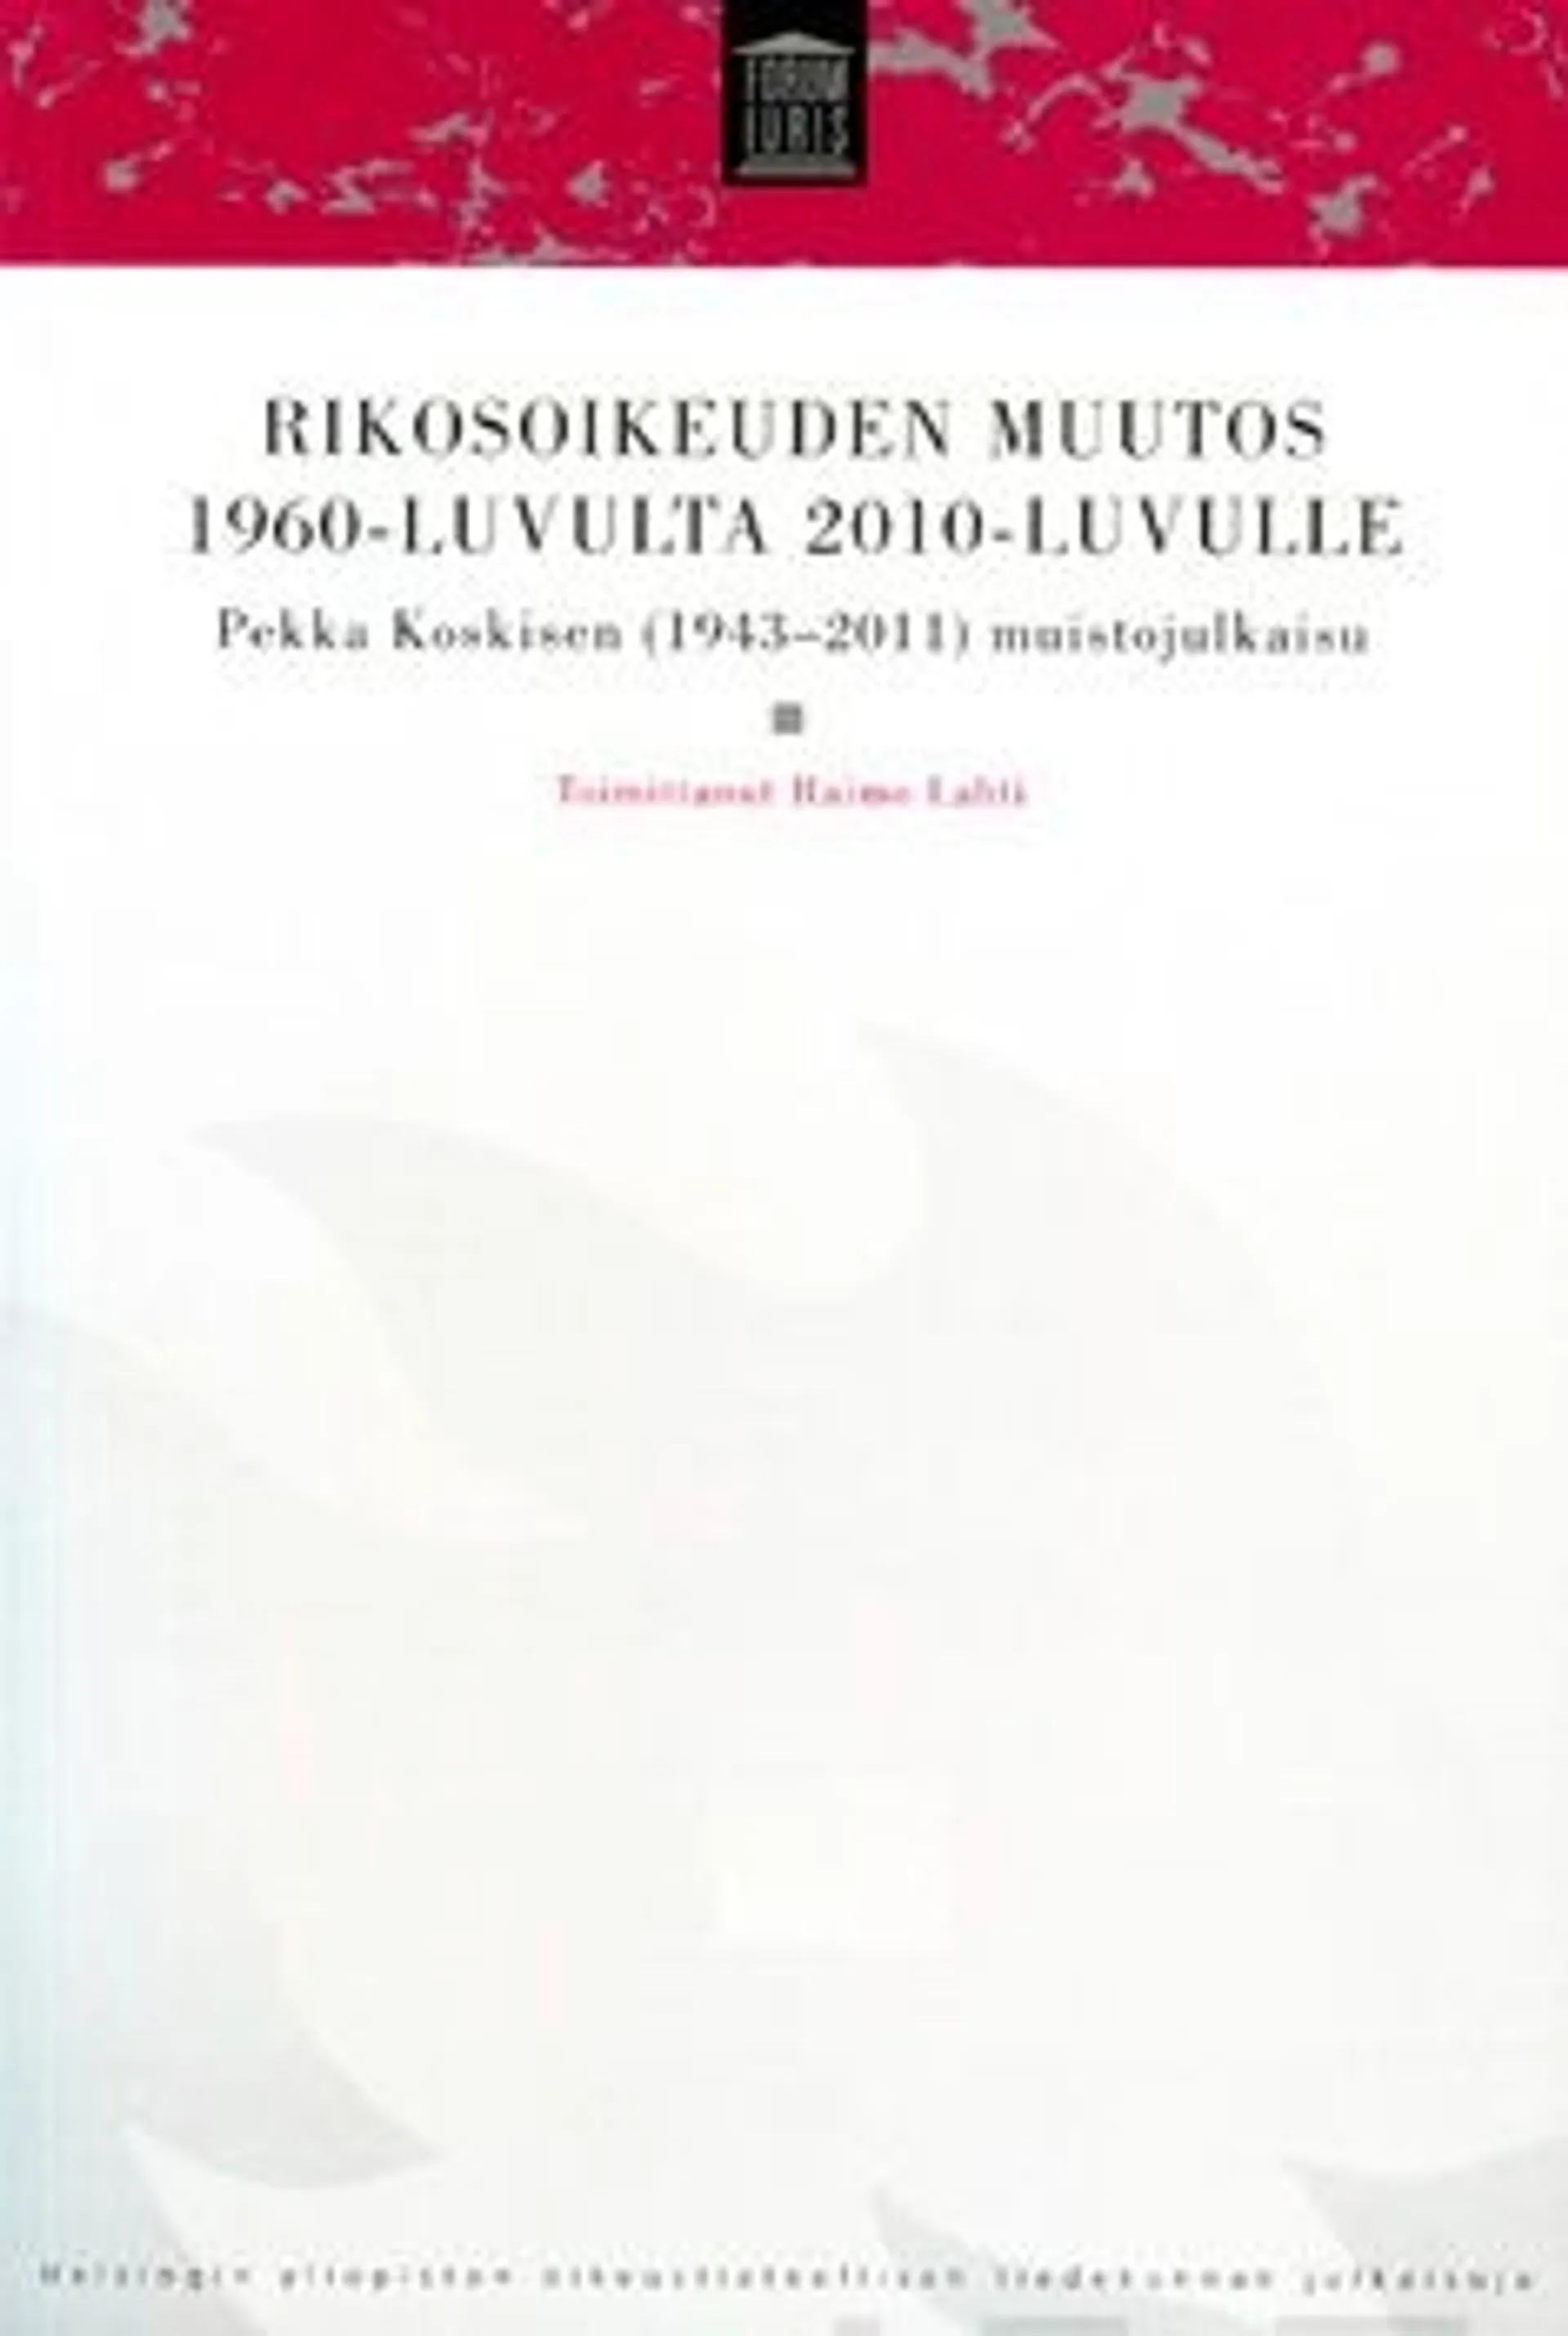 Rikosoikeuden muutos 1960-luvulta 2010-luvulle - Pekka Koskisen (1943-2011) muistojulkaisu